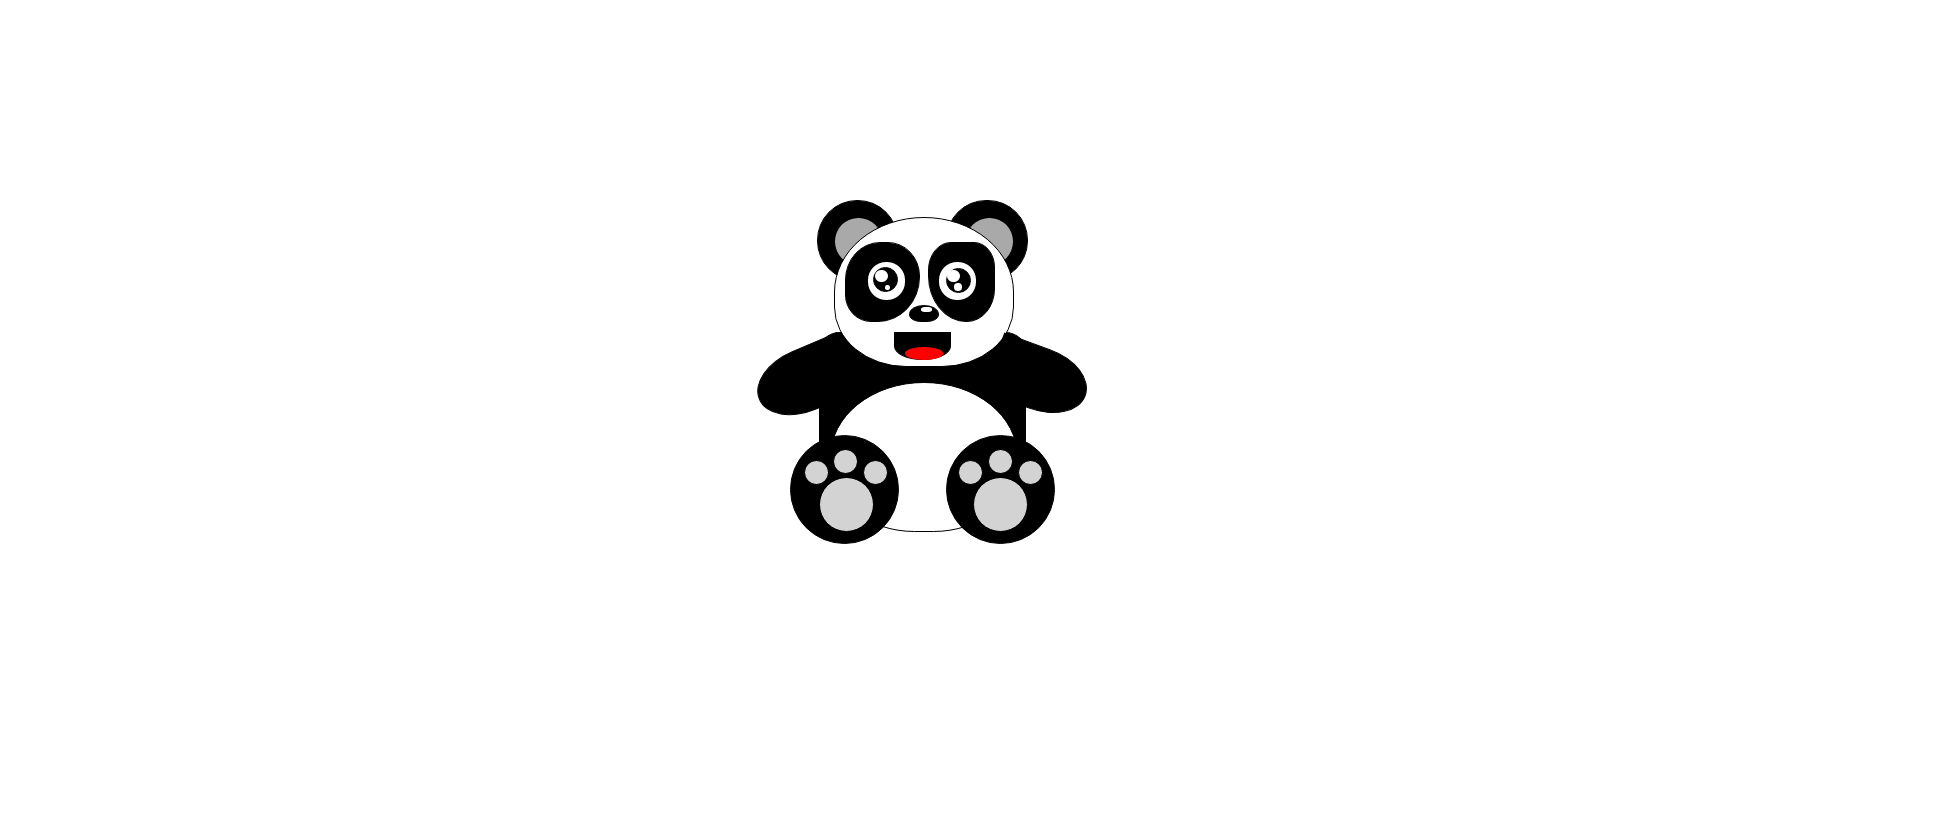 CSS 可爱熊猫图形特效代码下载